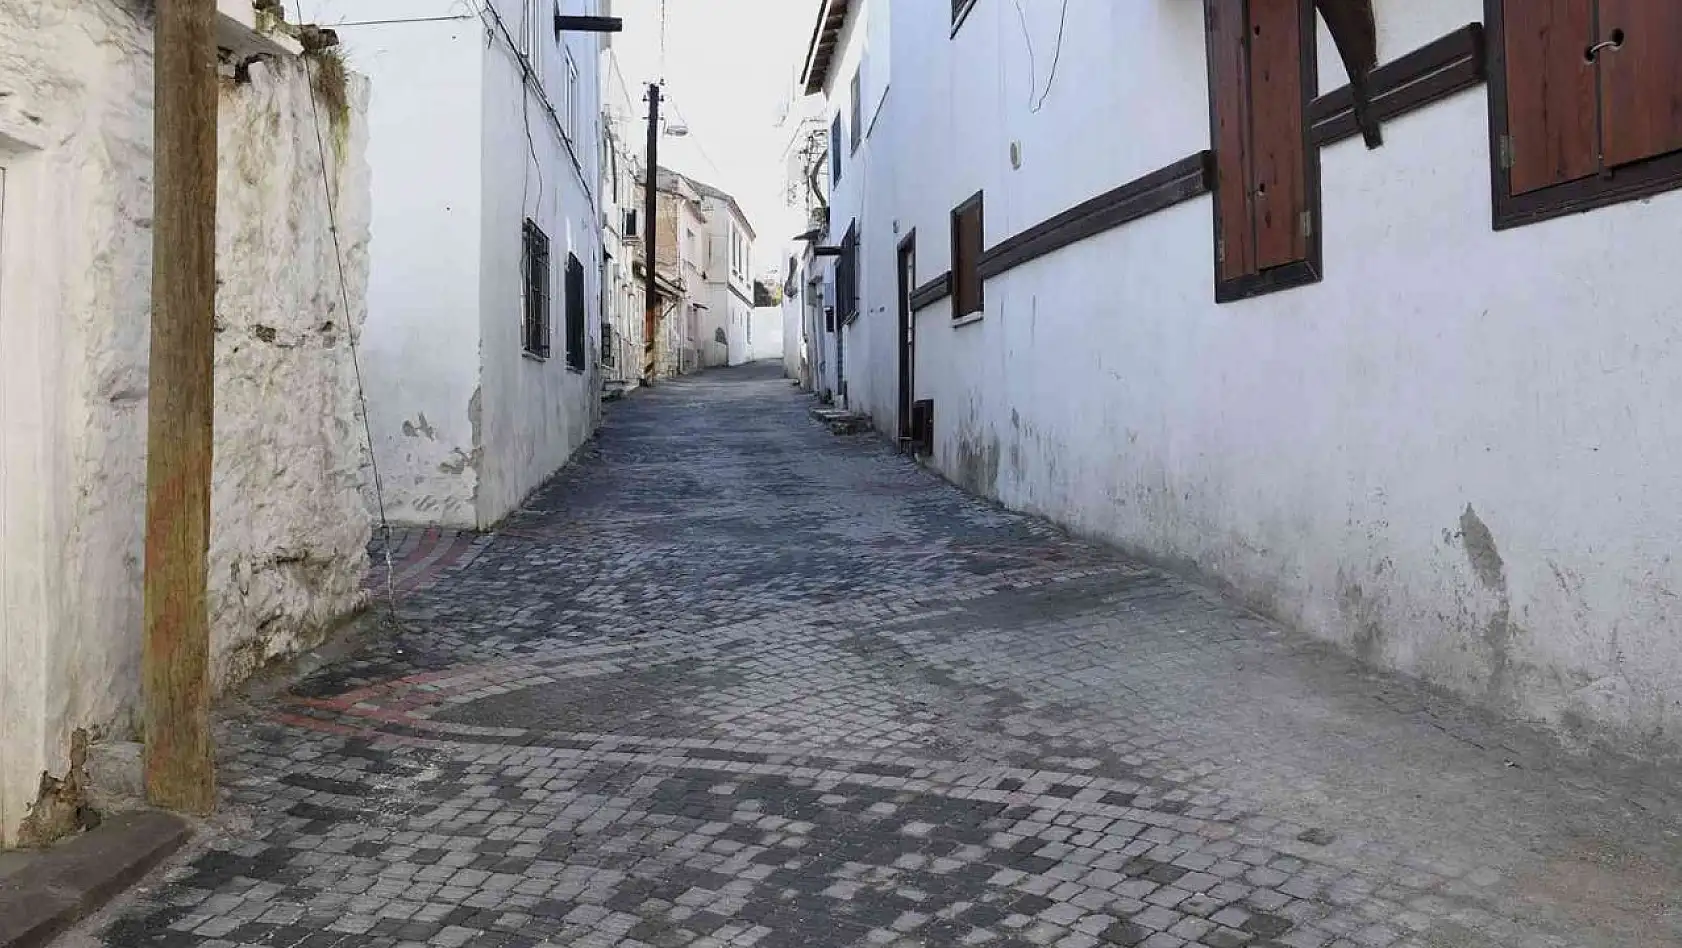 Eski Kuşadası'nın tarihi sokakları aslına uygun olarak yenilendi